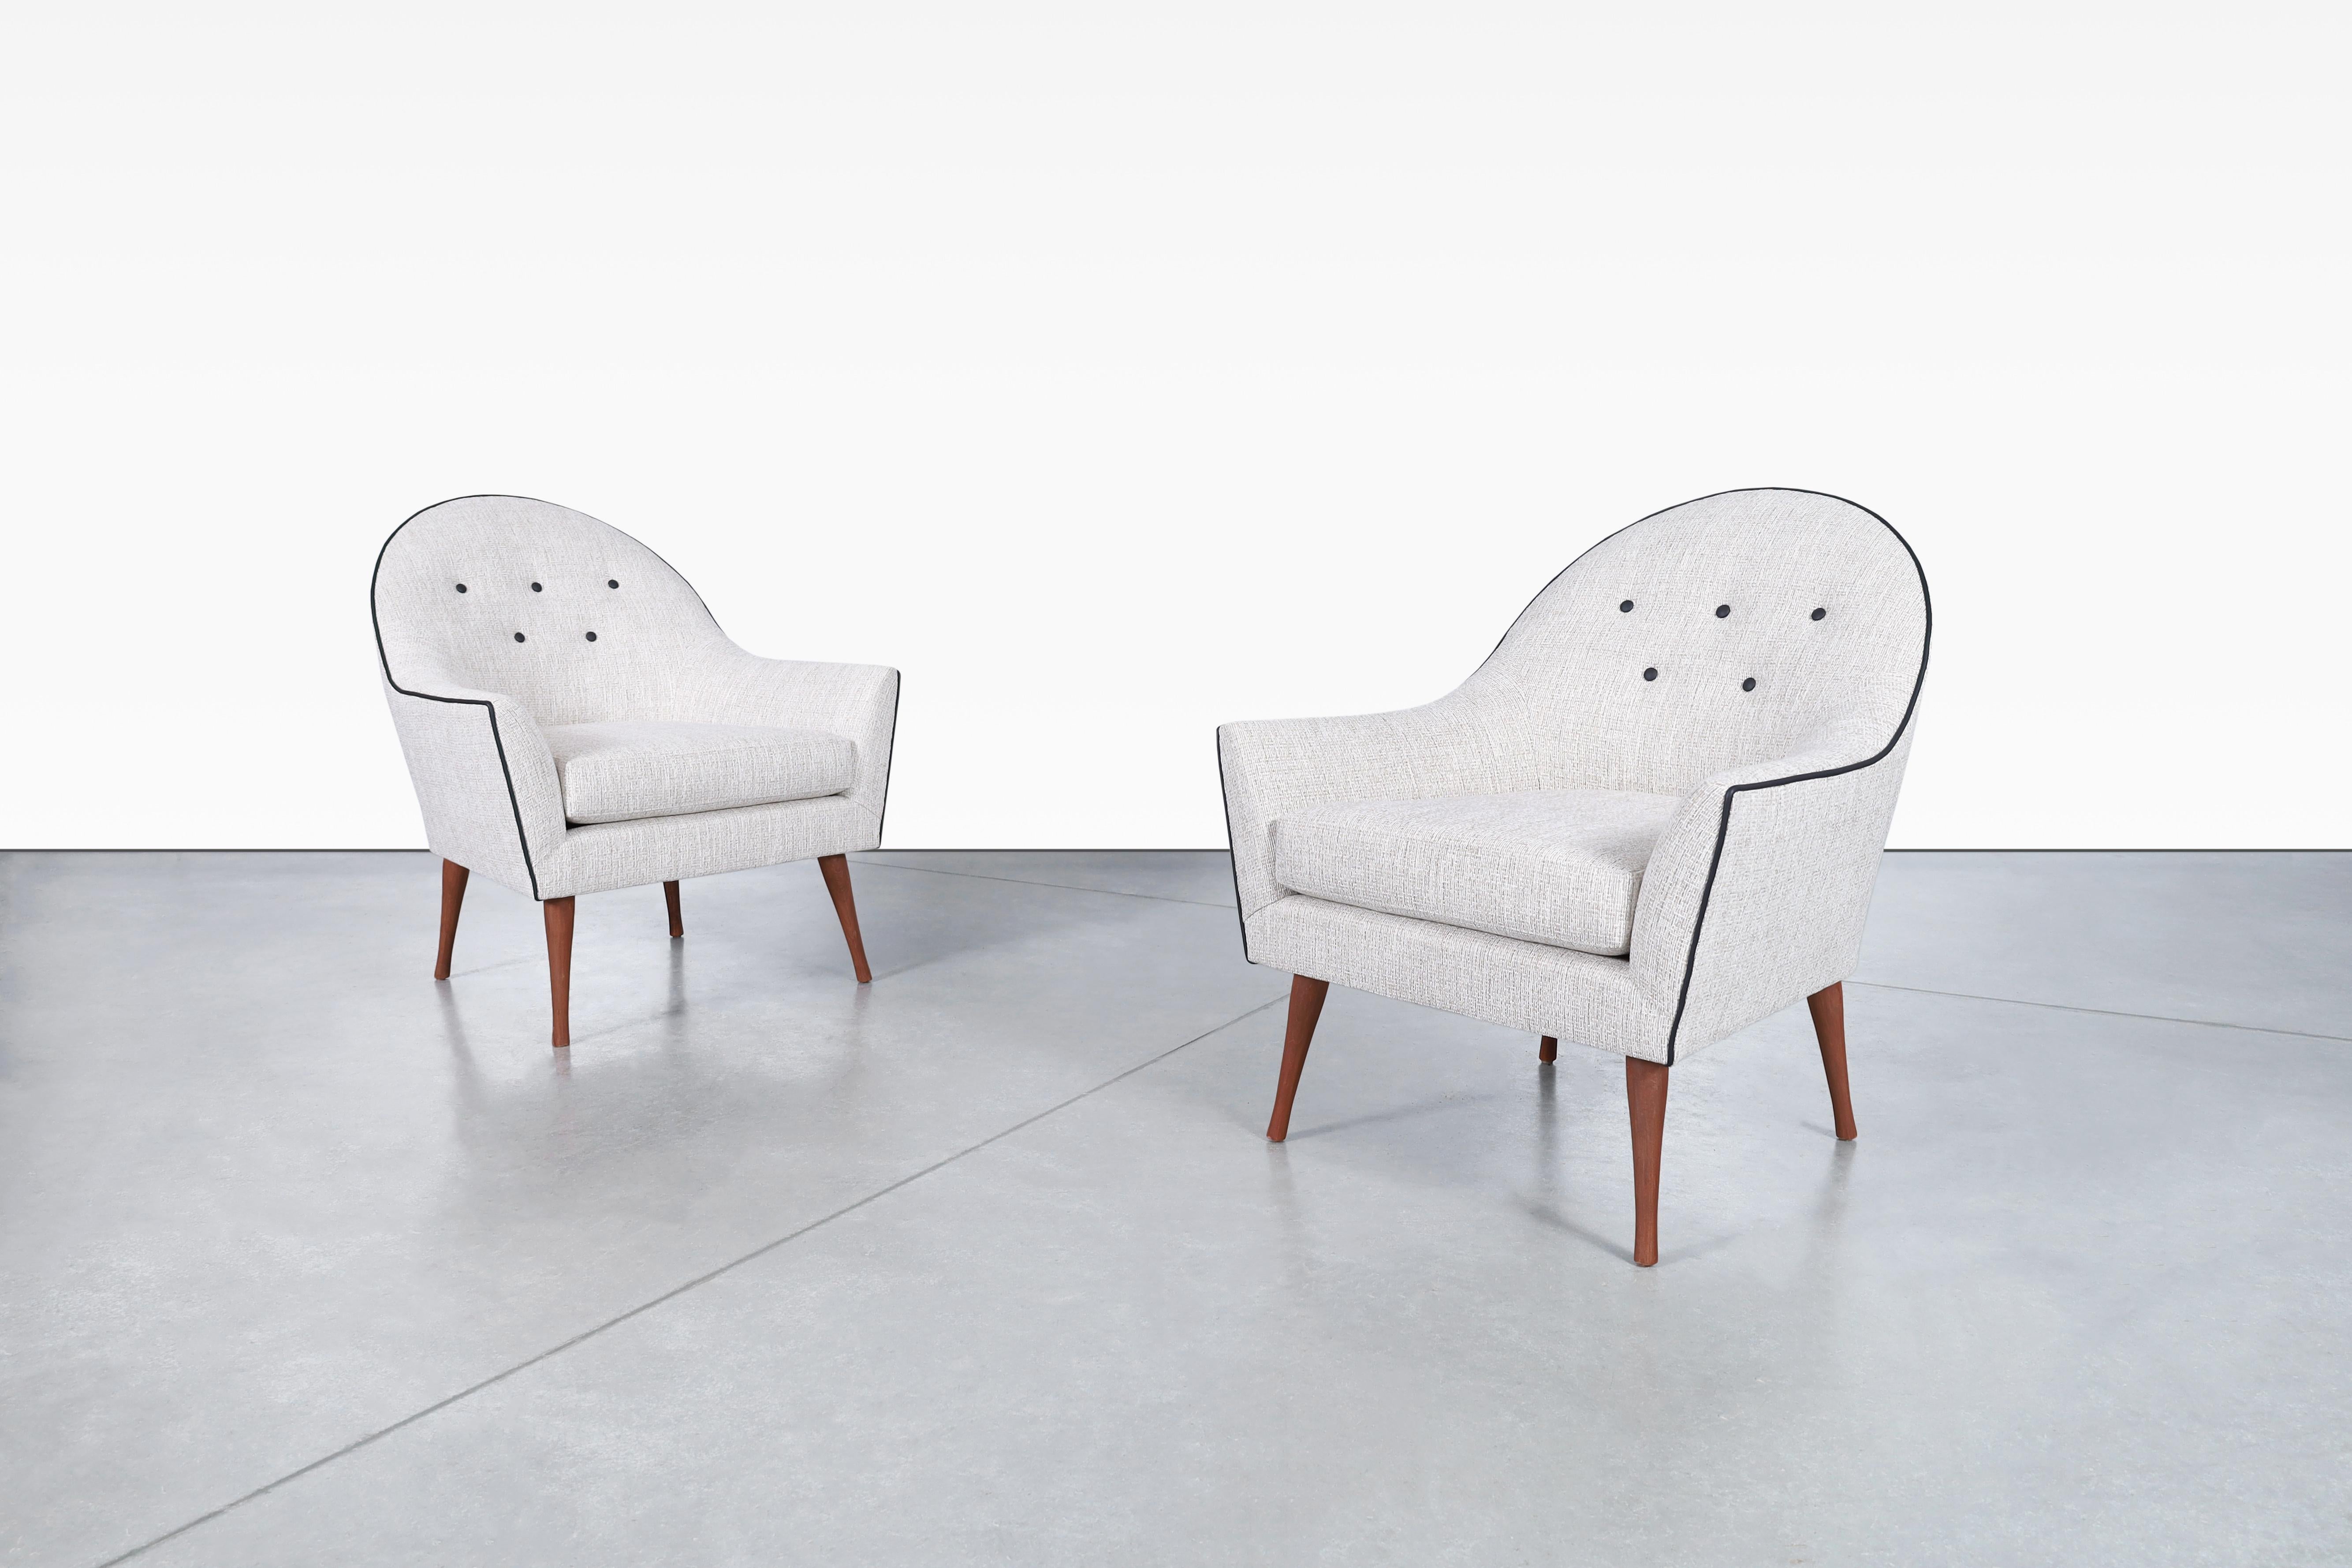 Chaises longues en noyer du milieu du siècle, conçues par Paul McCobb pour Widdicomb, aux États-Unis, vers les années 1960. Ces fabuleuses chaises ont été soigneusement remises à neuf et retapissées, ce qui leur confère une apparence fraîche et